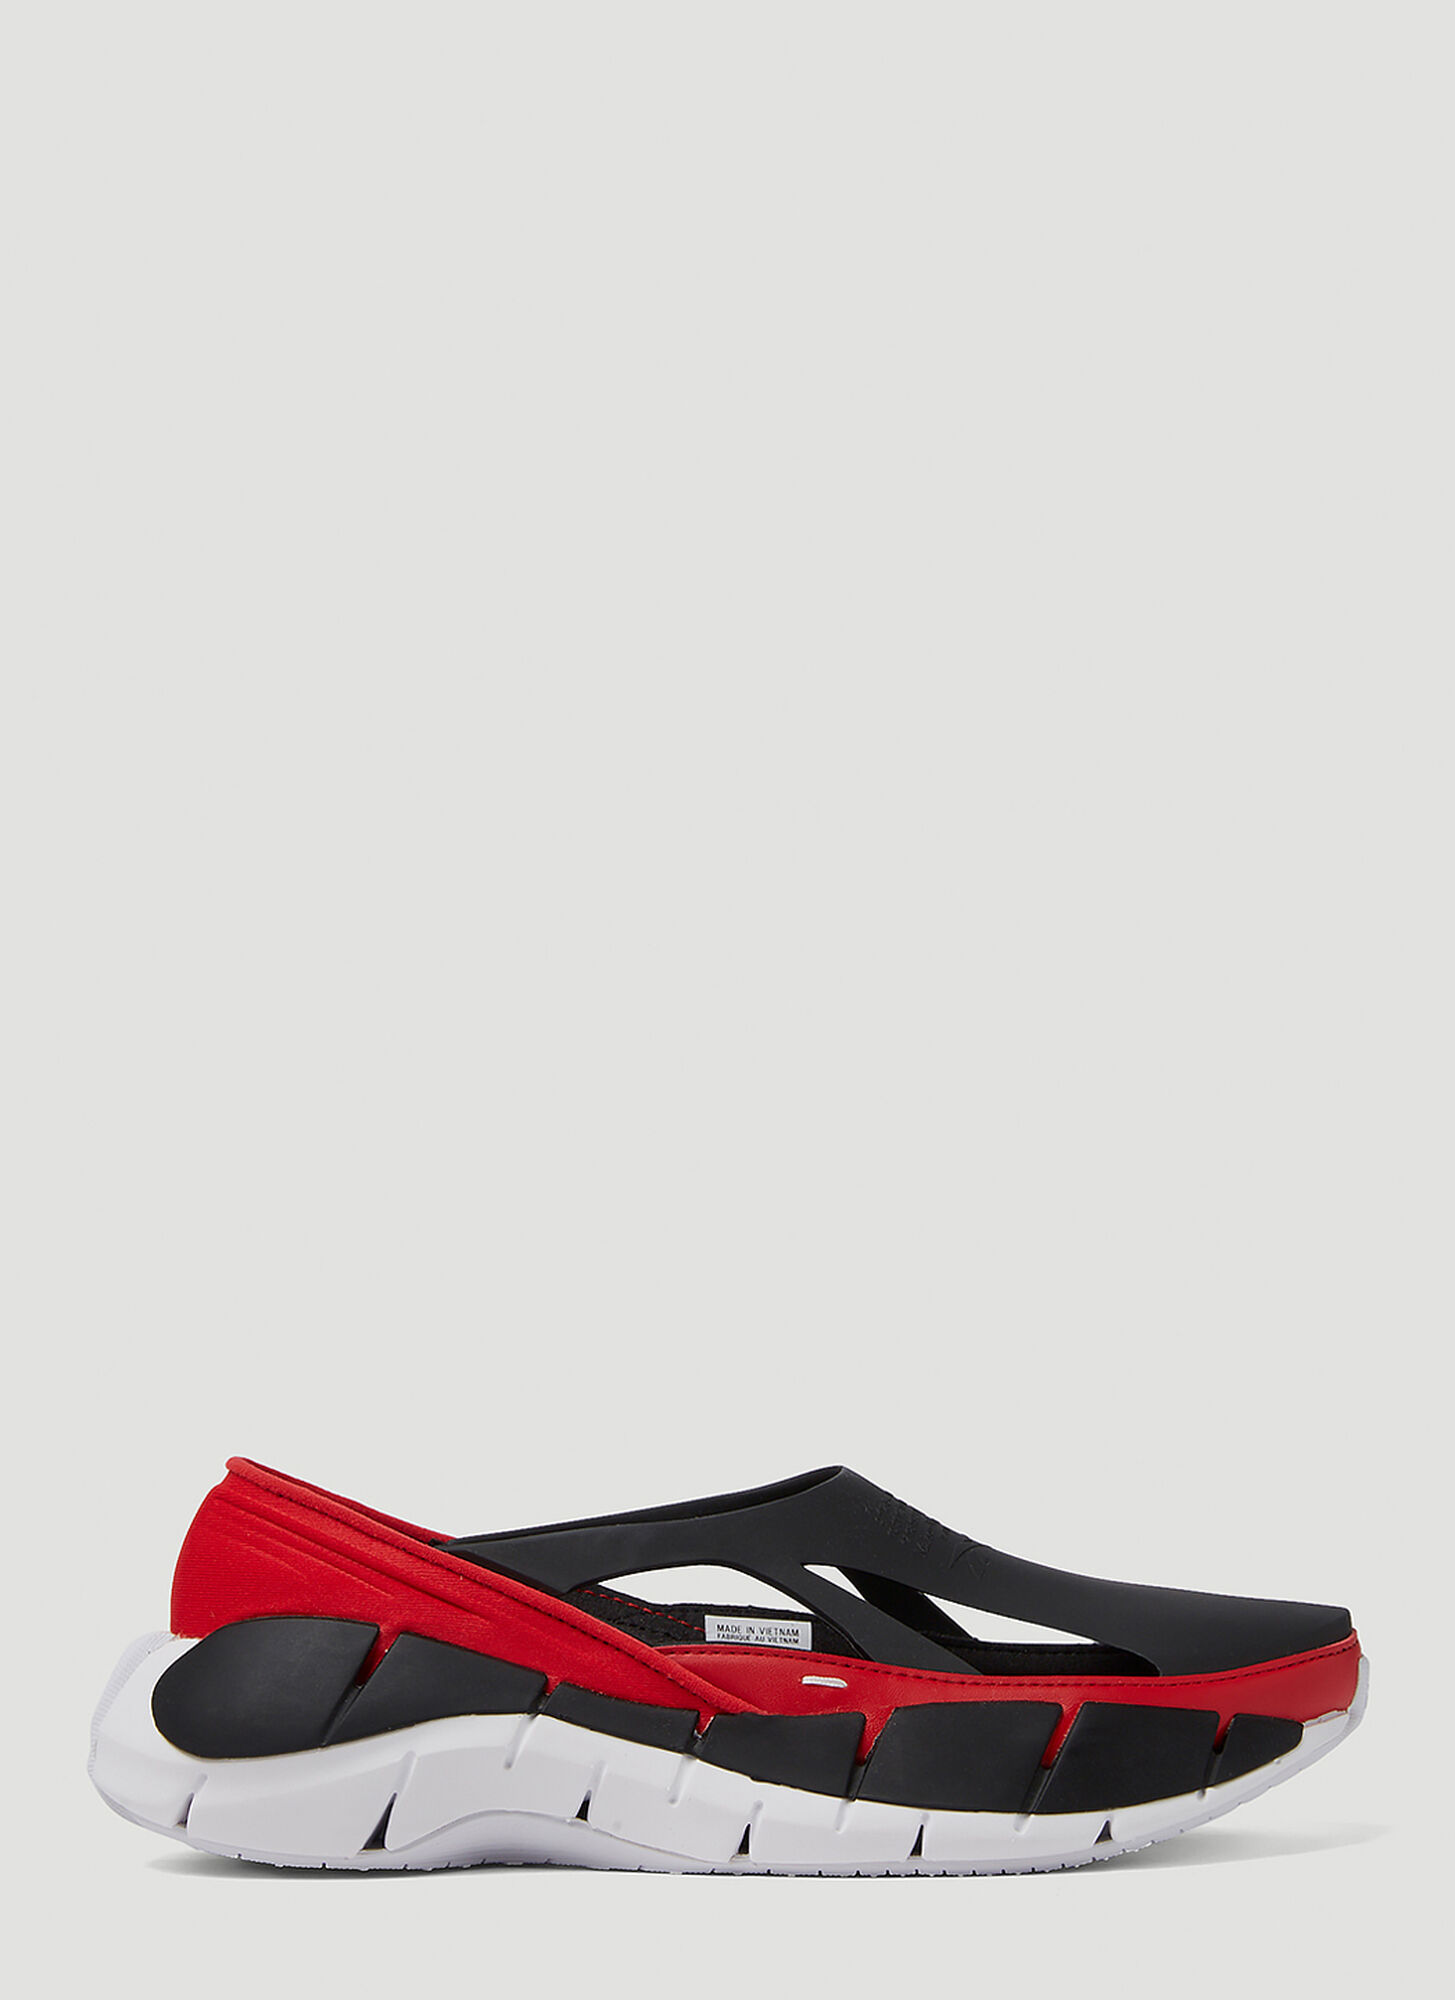 Shop Maison Margiela X Reebok Tier 1 Croafer Sneakers In Red